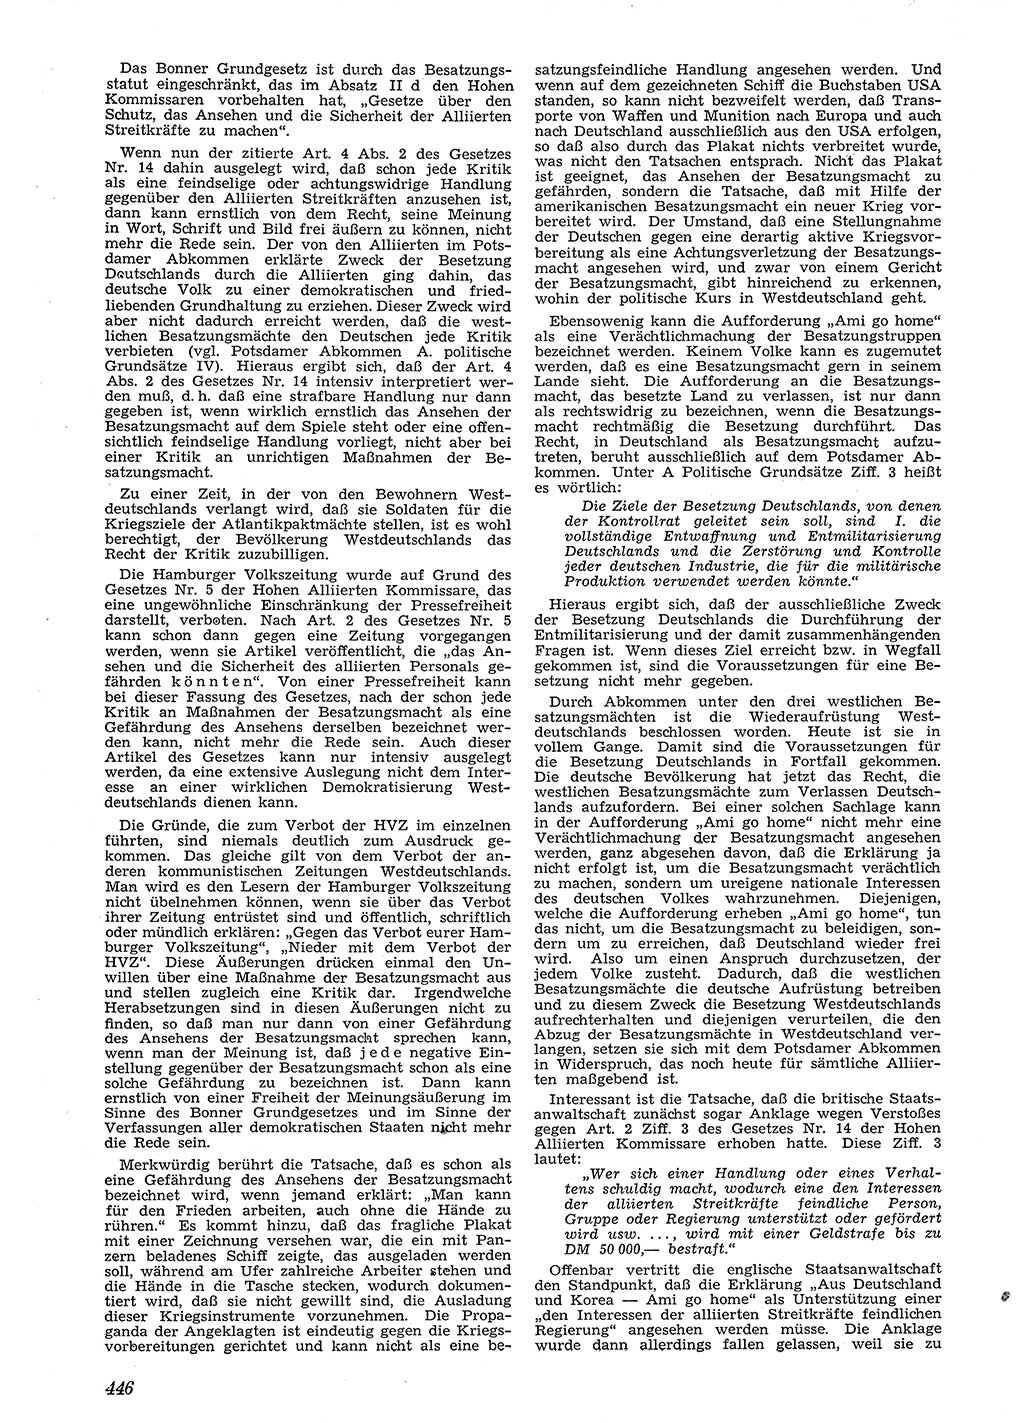 Neue Justiz (NJ), Zeitschrift für Recht und Rechtswissenschaft [Deutsche Demokratische Republik (DDR)], 4. Jahrgang 1950, Seite 446 (NJ DDR 1950, S. 446)